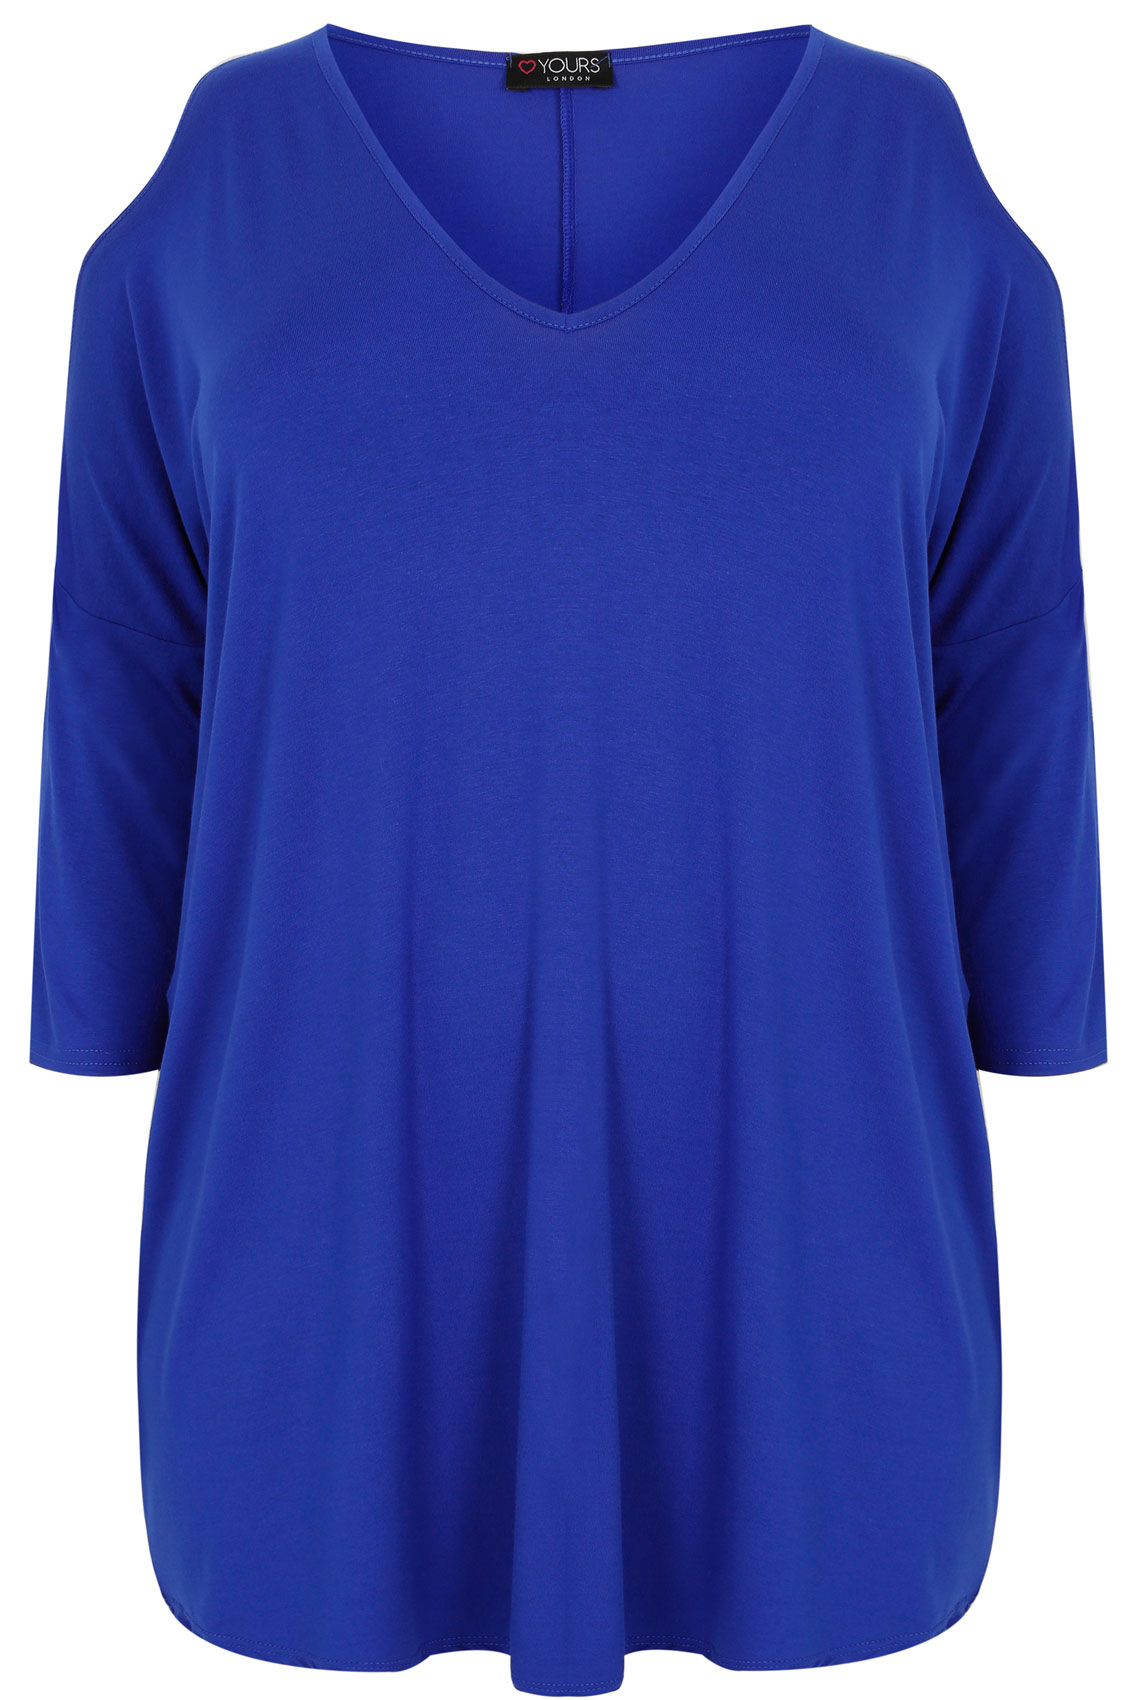 Cobalt Blue Oversized Jersey Top With V-Neck & Cold Shoulder, Plus Size ...